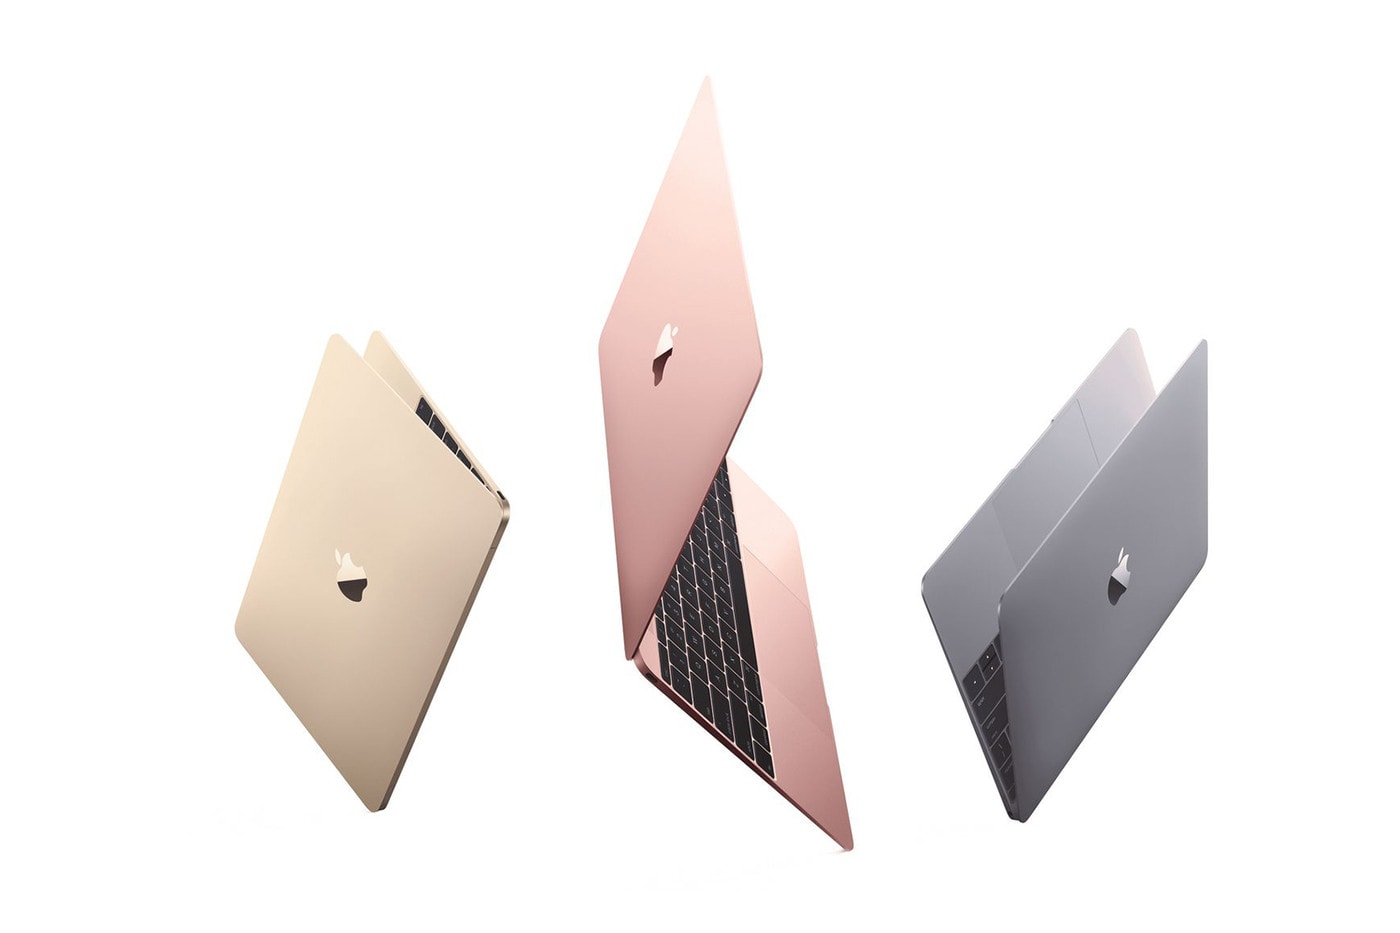 애플, 아이맥에 이어 다채로운 컬러웨이의 맥북을 출시한다?, M1 칩, M2 칩, 아이맥, 노트북, 랩탑, 랩톱, 맥북 프로, 맥북 에어